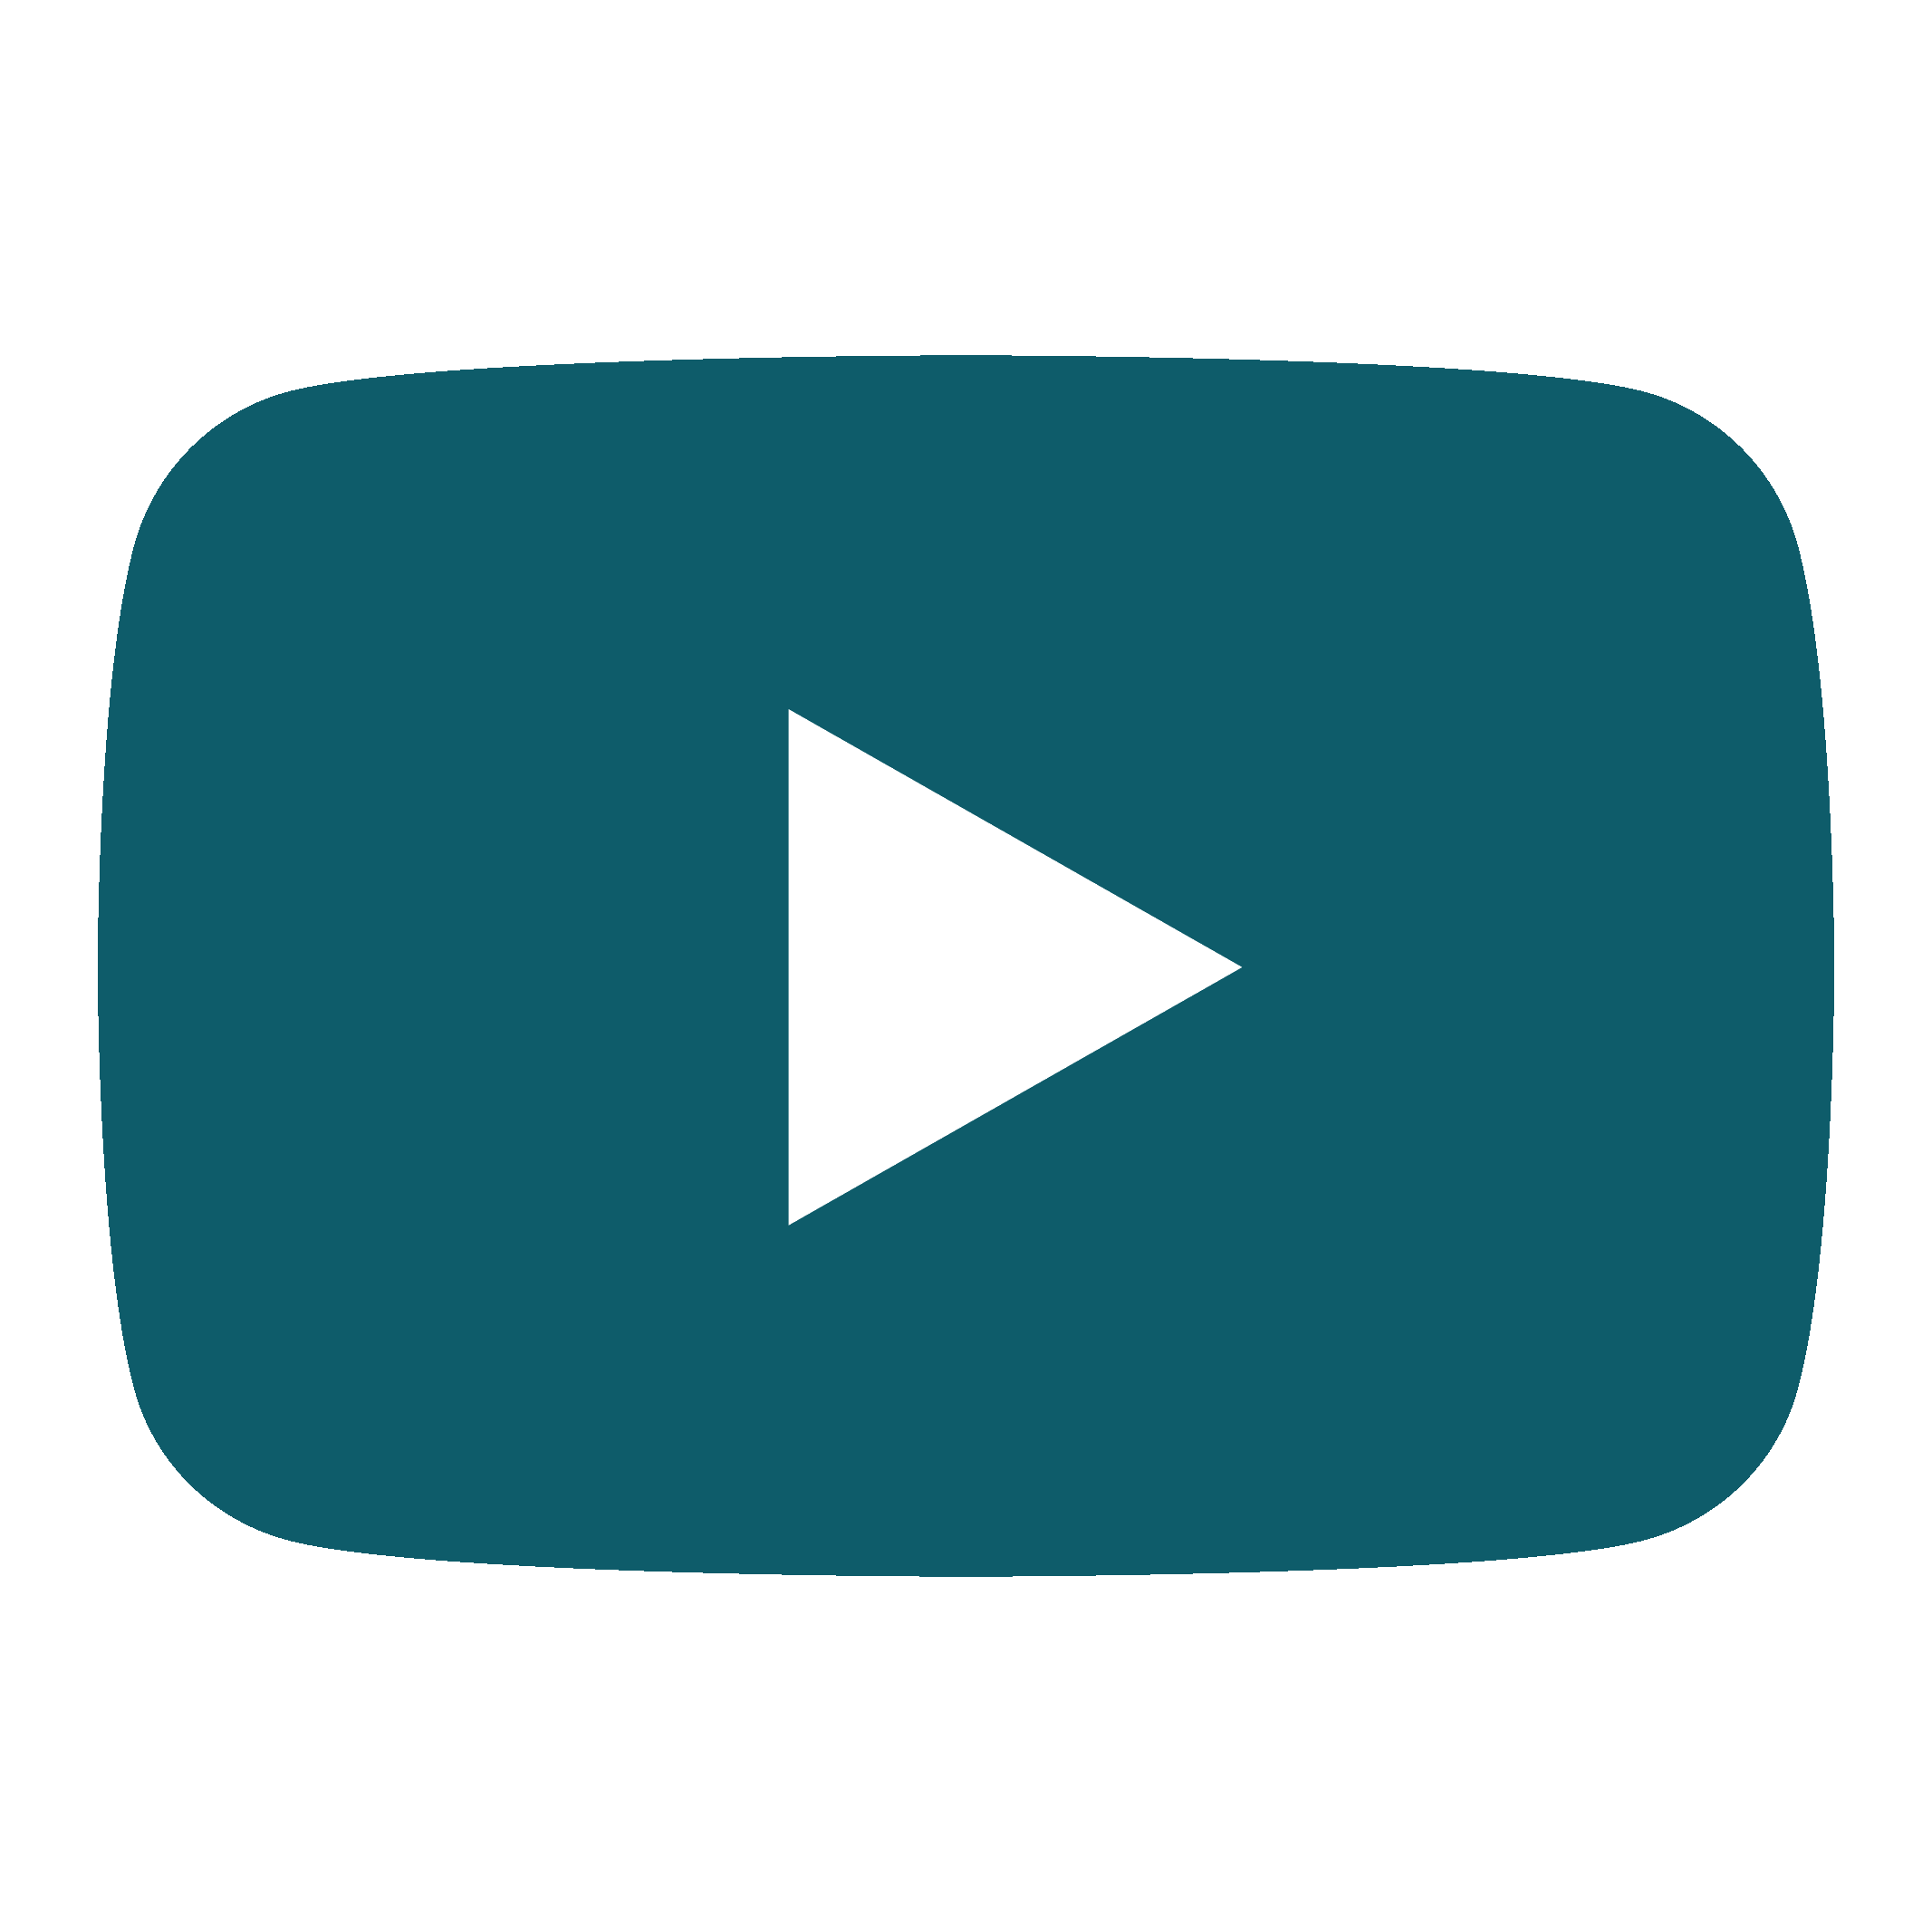 AEFLA Canal YouTube